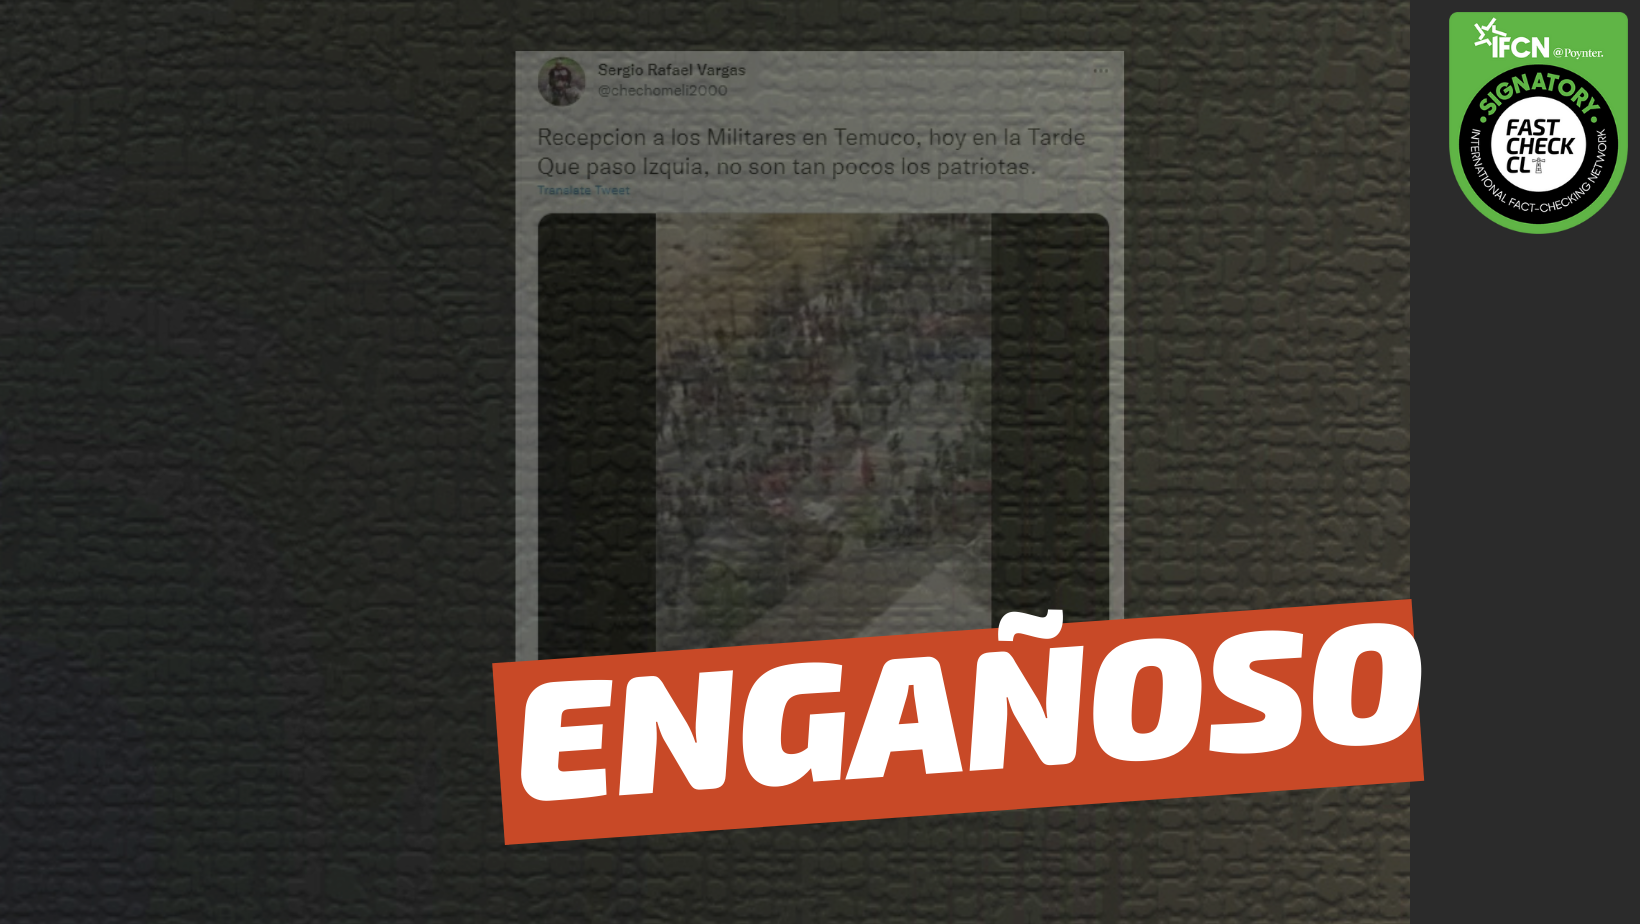 Read more about the article (Video) “Así reciben a los militares en Temuco”: #Engañoso